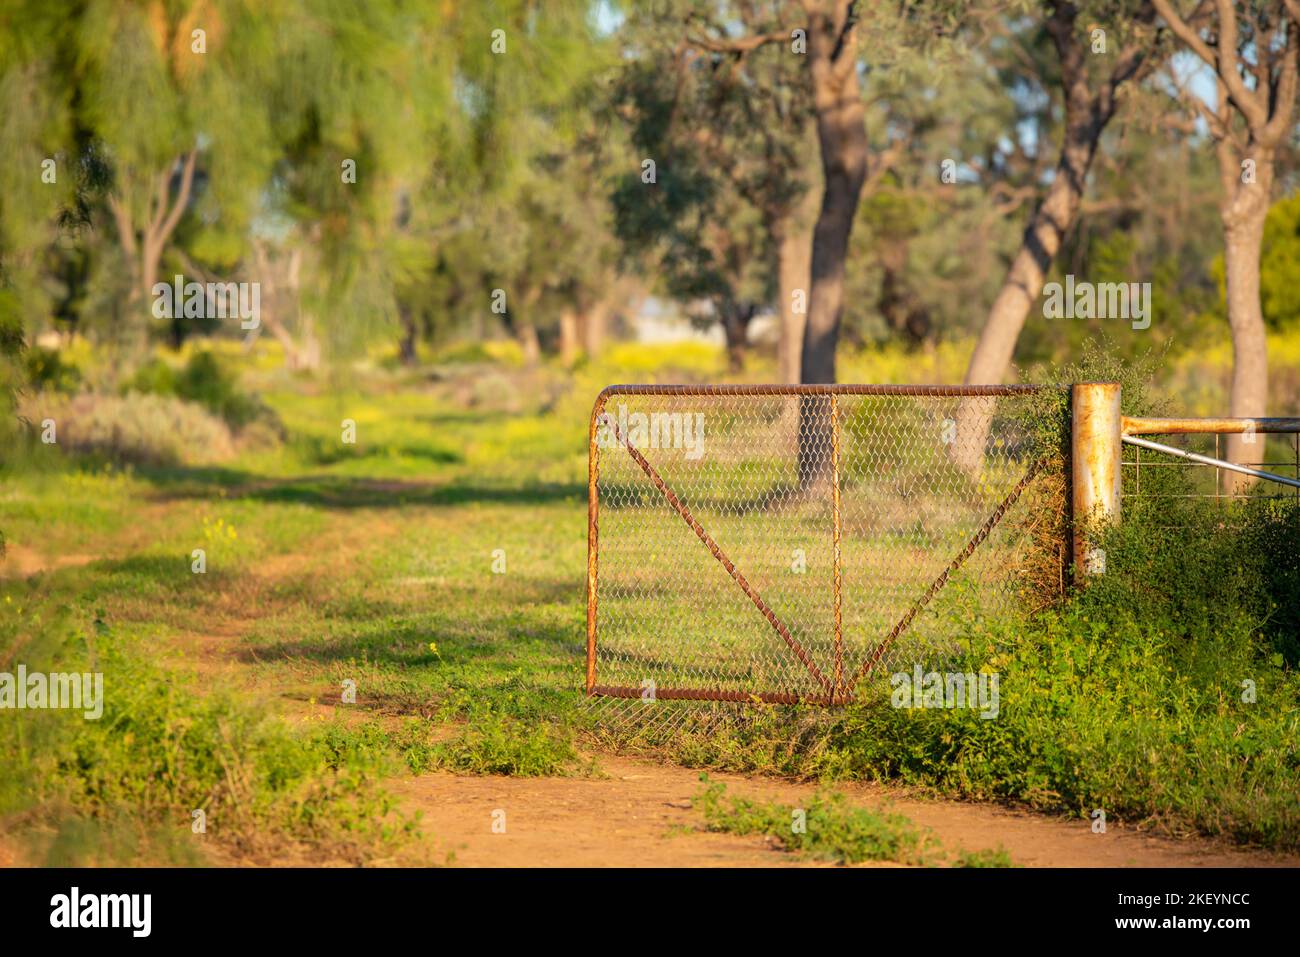 Am 2022. September wurde auf einer Farm im Nordwesten von New South Wales, Australien, ein offenes Farmtor und eine unbefestigte Straße mit üppigem grünen Wachstum durch die jüngsten Regenfälle bewachsen Stockfoto